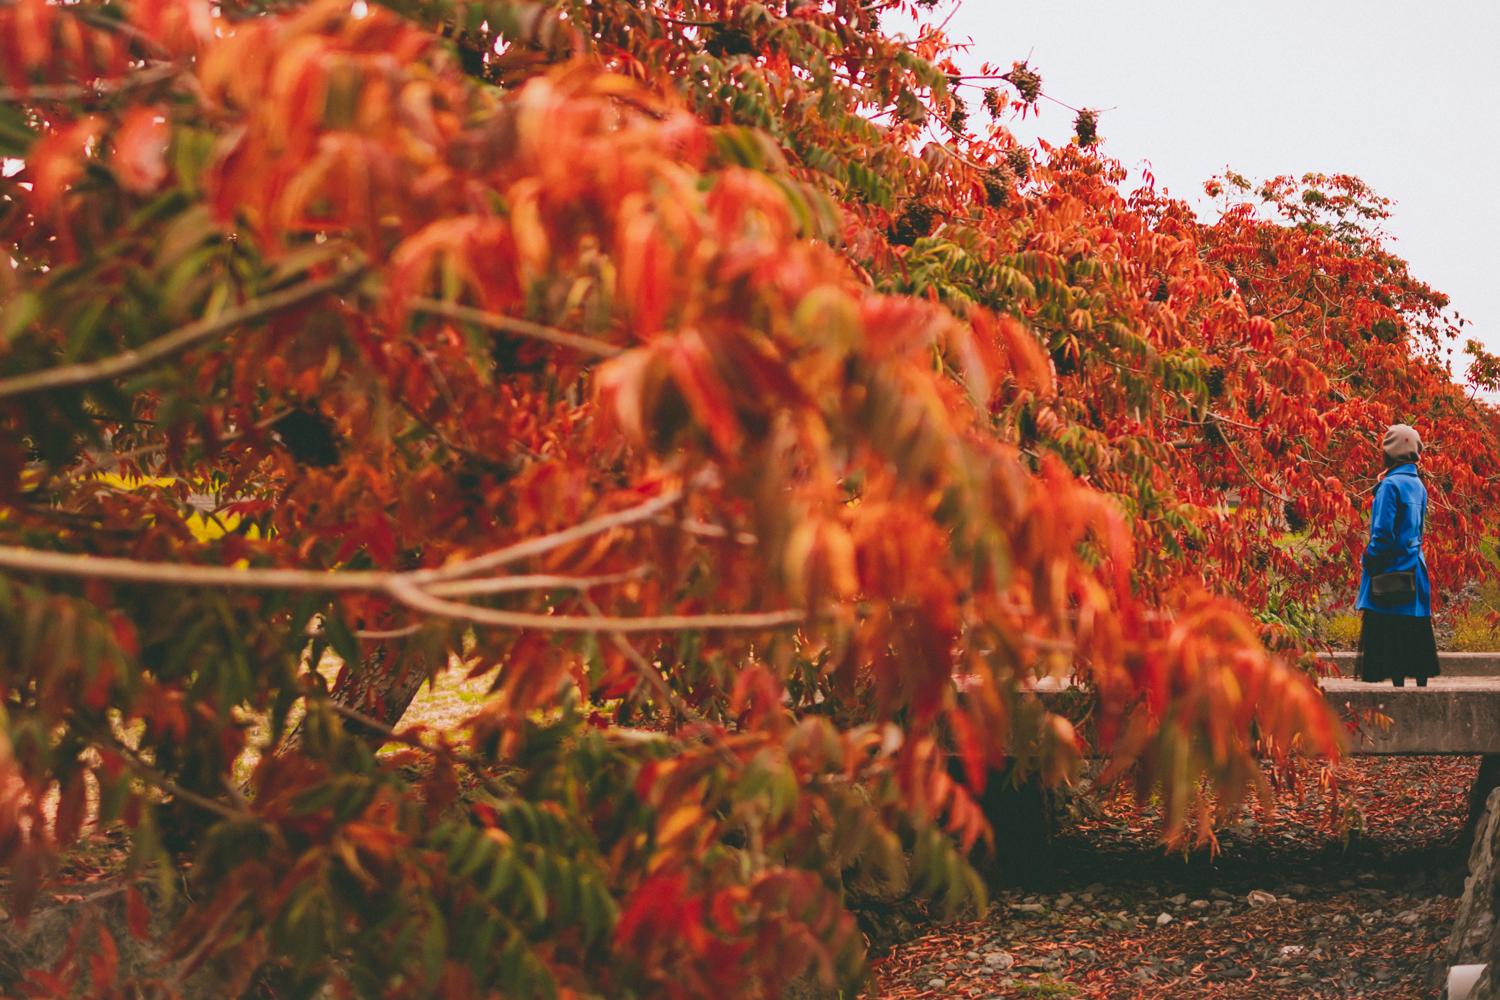 柳坂曽根の櫨並木の紅葉